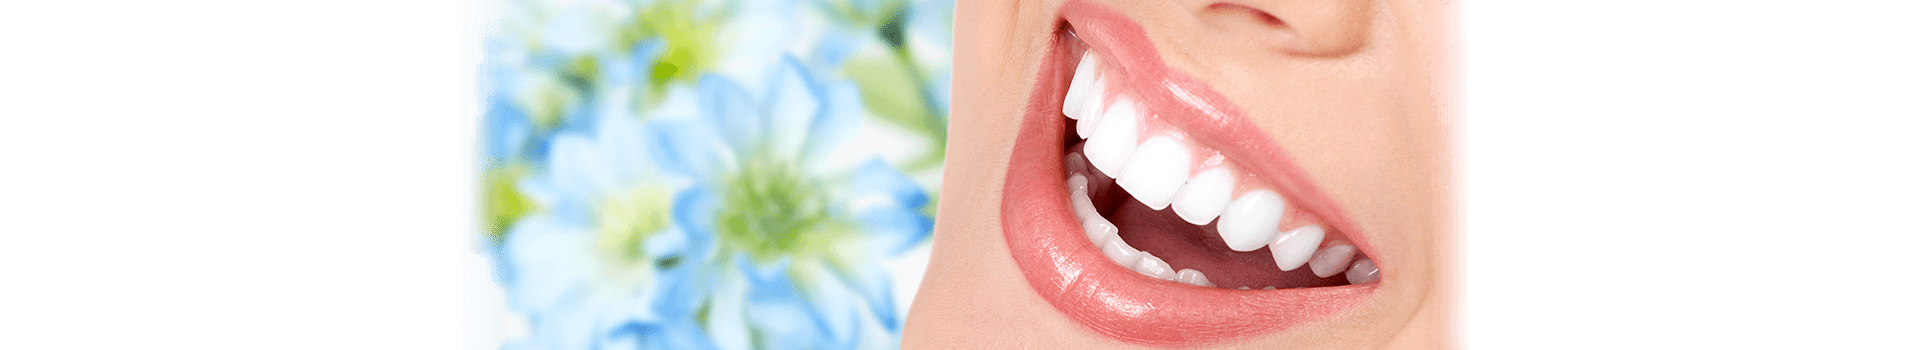 Elizdiş - Implant ve Estetik Diş Hekimliği / İstanbul